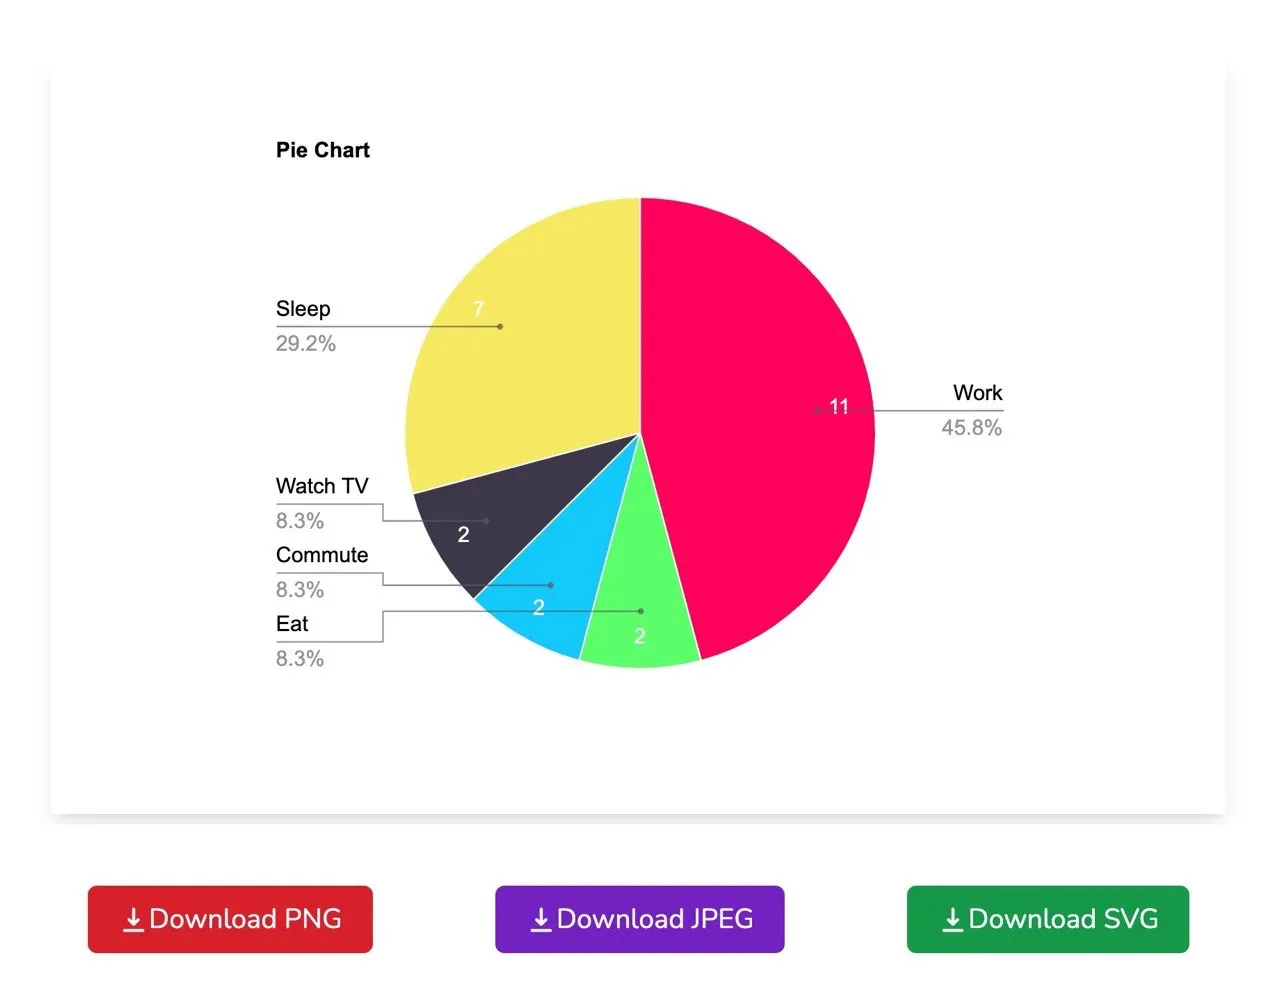 Pie Chart Maker 易于使用的圆饼图製作工具，可下载三种格式